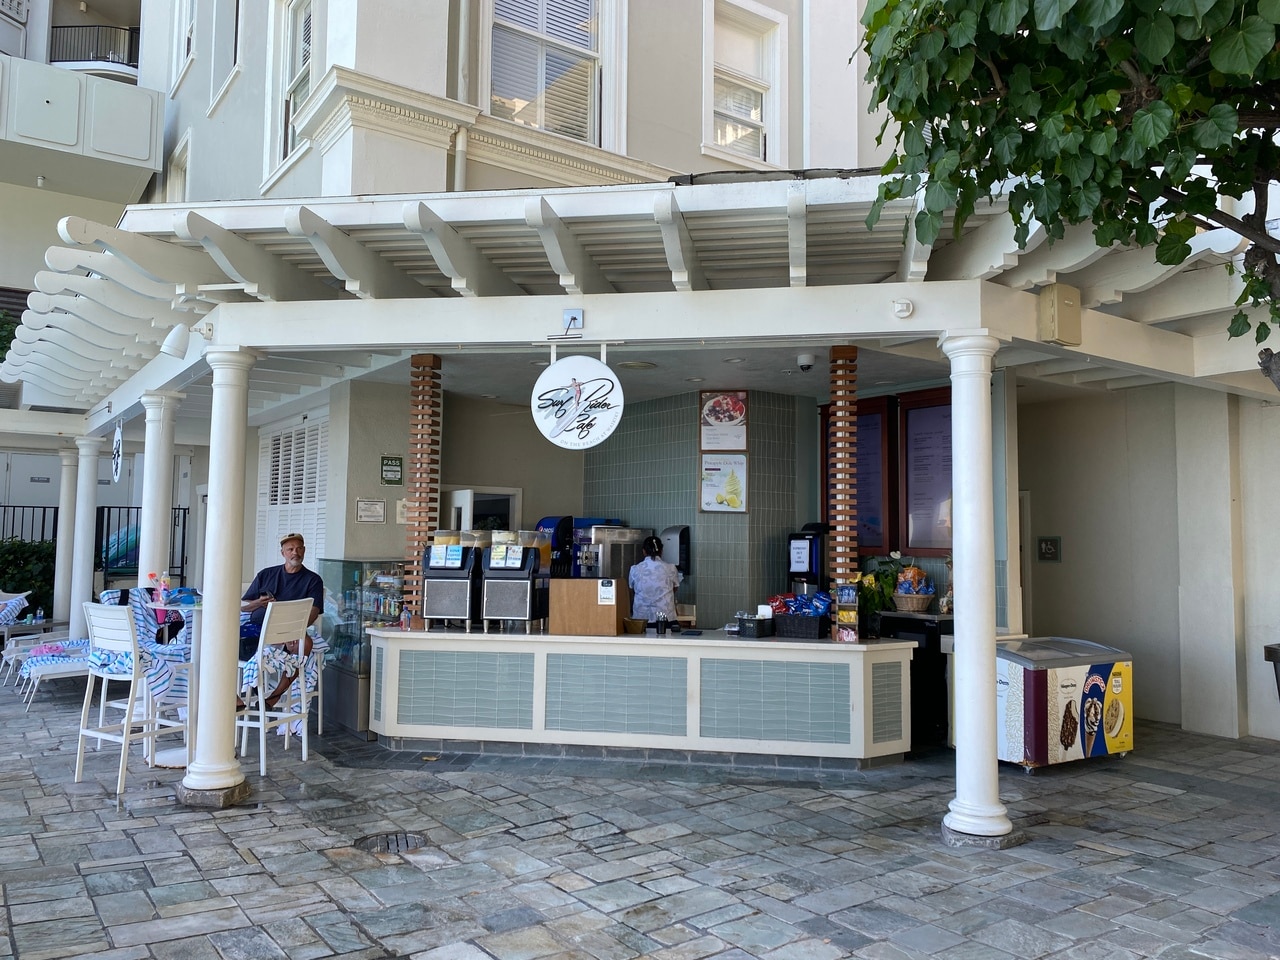 私はいつも、プールサイドにある通し営業の売店「Surfrider Café」で購入しています。